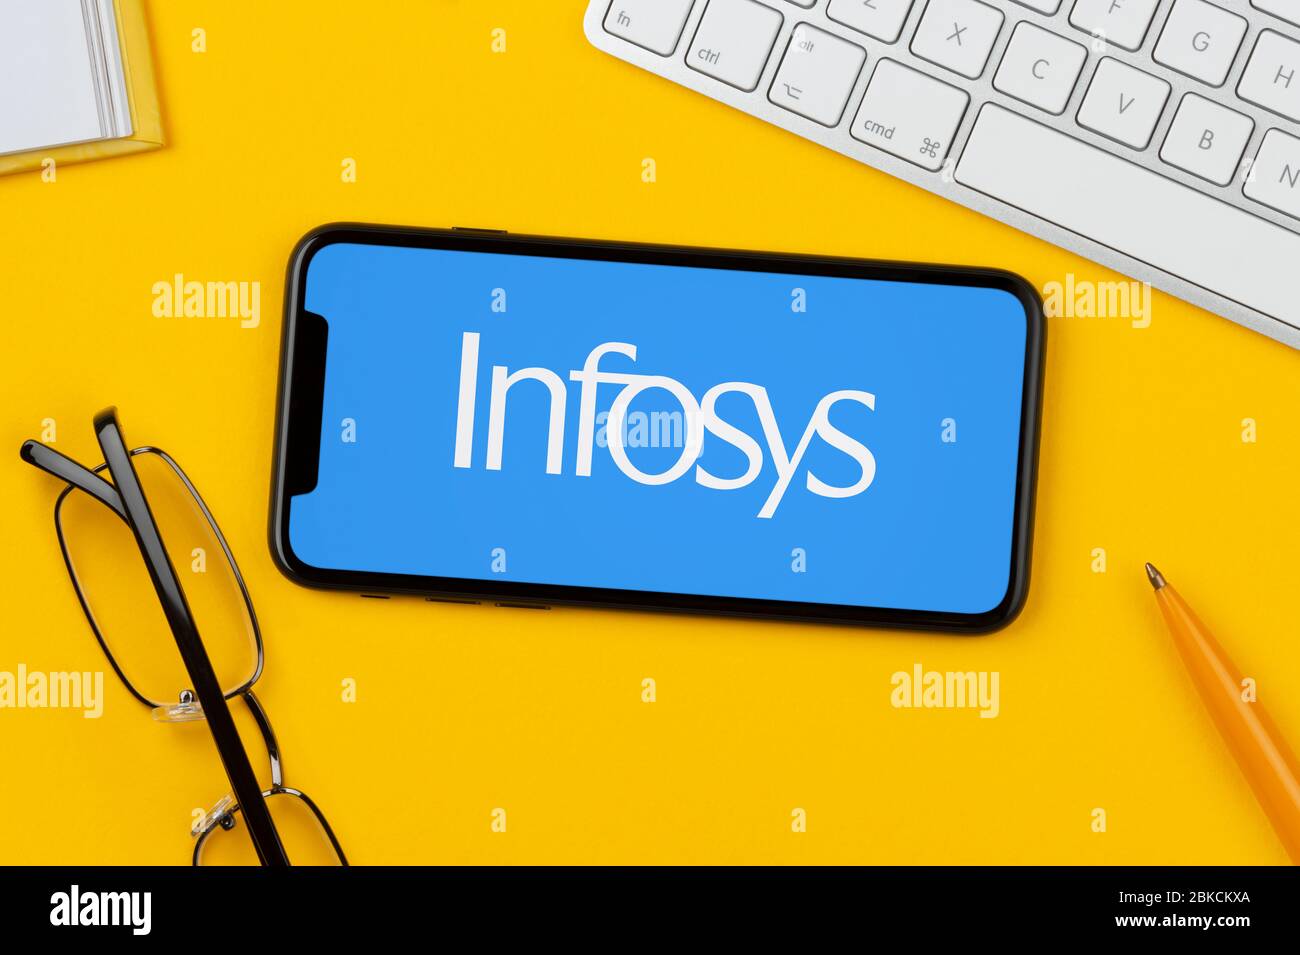 Un smartphone affichant le logo Infosys repose sur un fond jaune avec un clavier, des lunettes, un stylo et un livre (usage éditorial uniquement). Banque D'Images